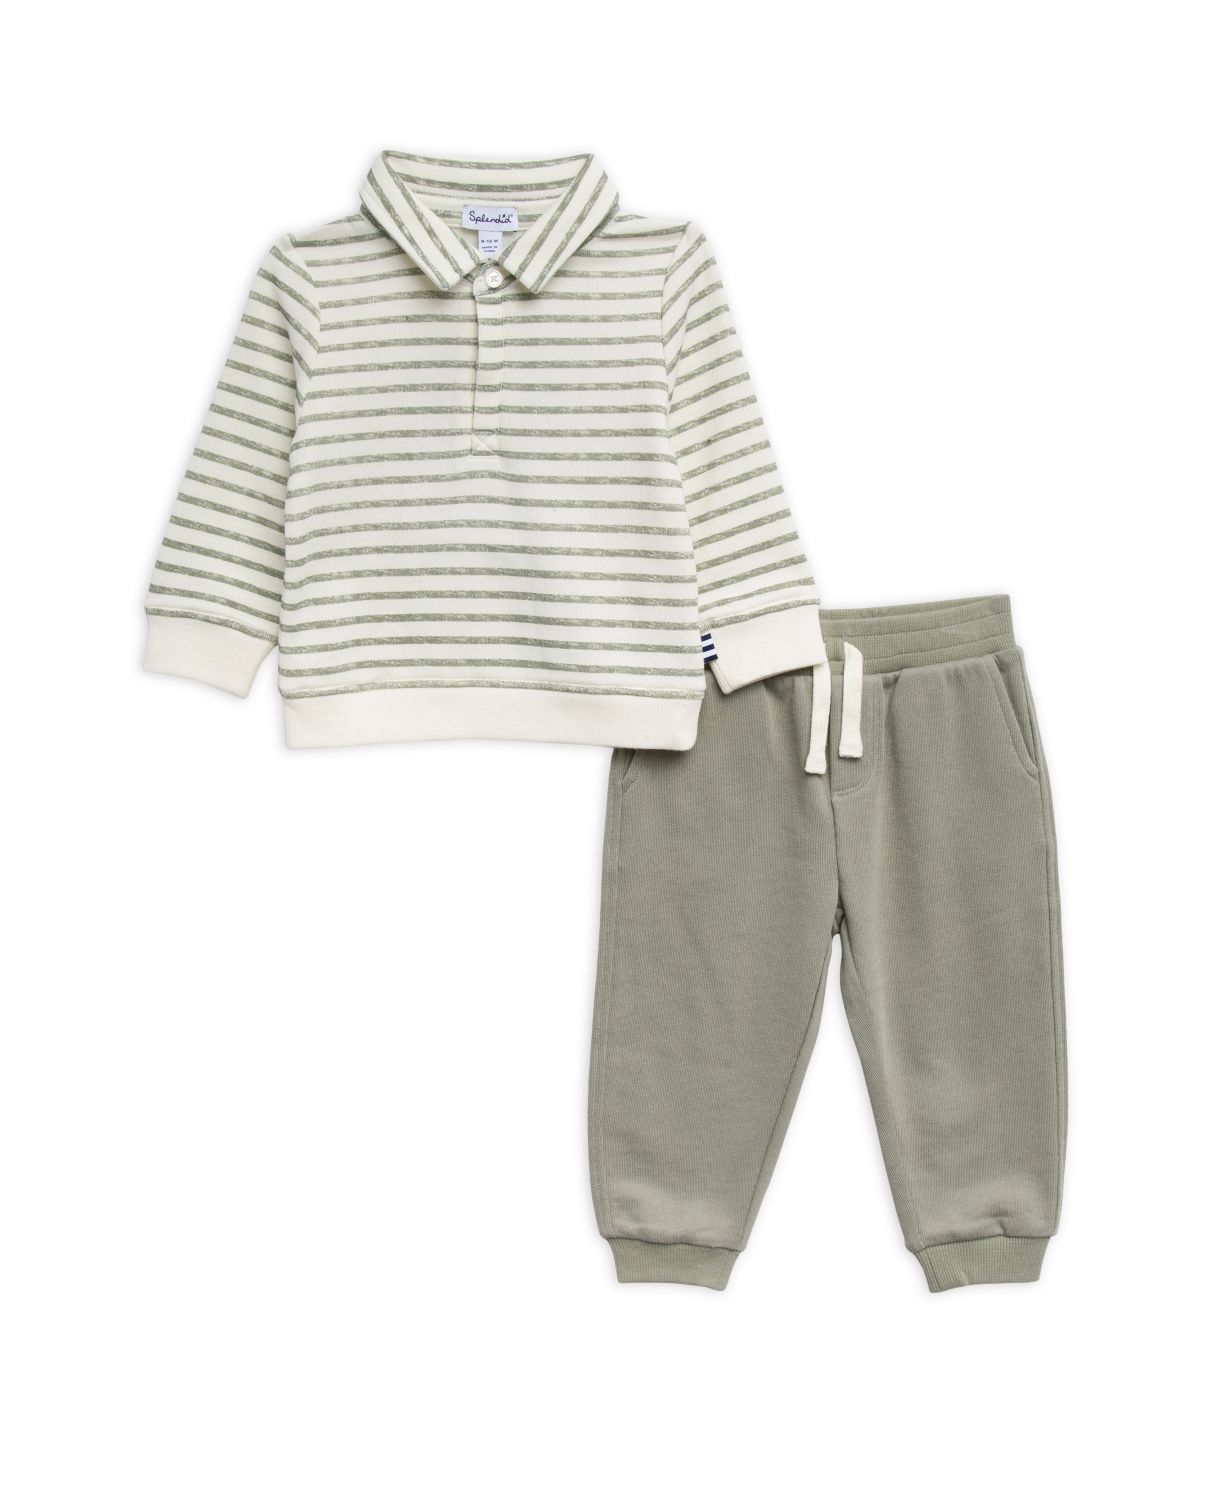 Двухсекционная рубашка-поло в полоску для маленького мальчика и amp; Комплект для джоггеров Splendid